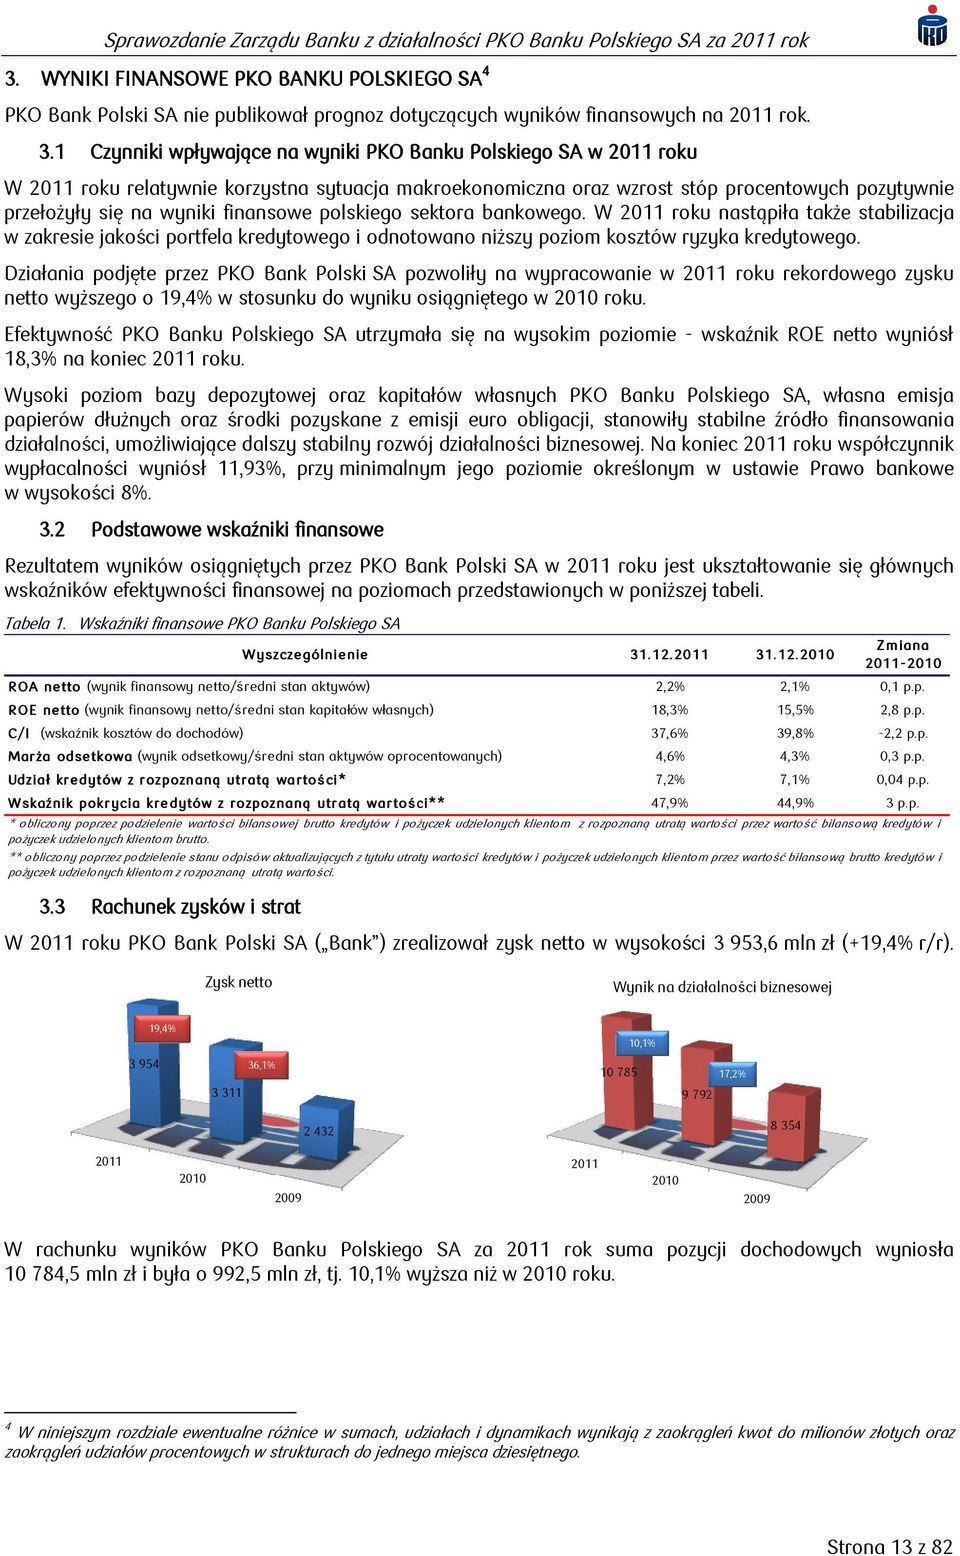 finansowe polskiego sektora bankowego. W 2011 roku nastąpiła także stabilizacja w zakresie jakości portfela kredytowego i odnotowano niższy poziom kosztów ryzyka kredytowego.